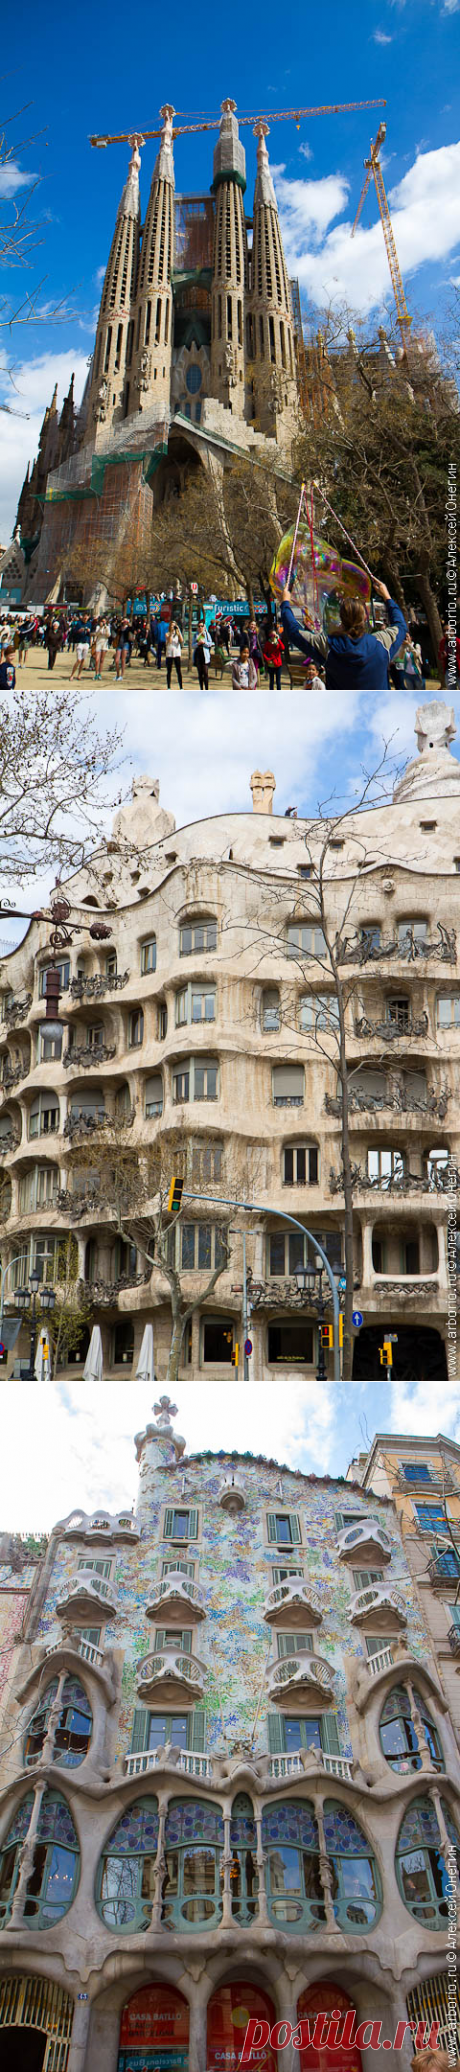 Наследие Гауди - Барселона, Испания | Путевые заметки Алексея Онегина